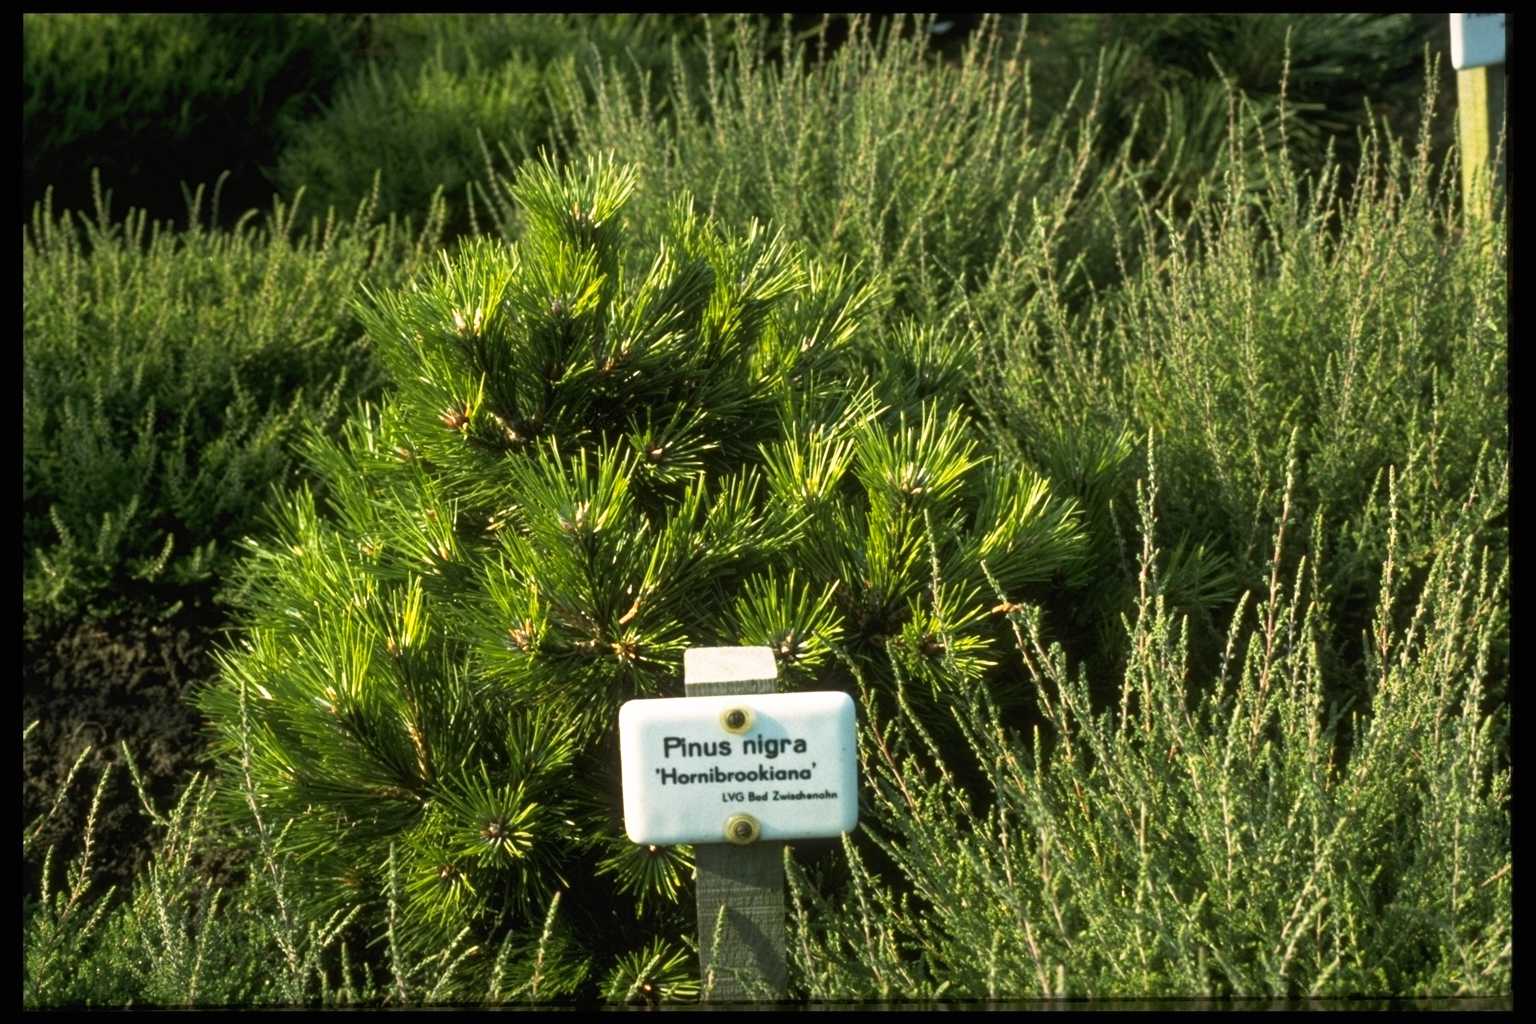 Pinus nigra ‘Hornibrookiana’